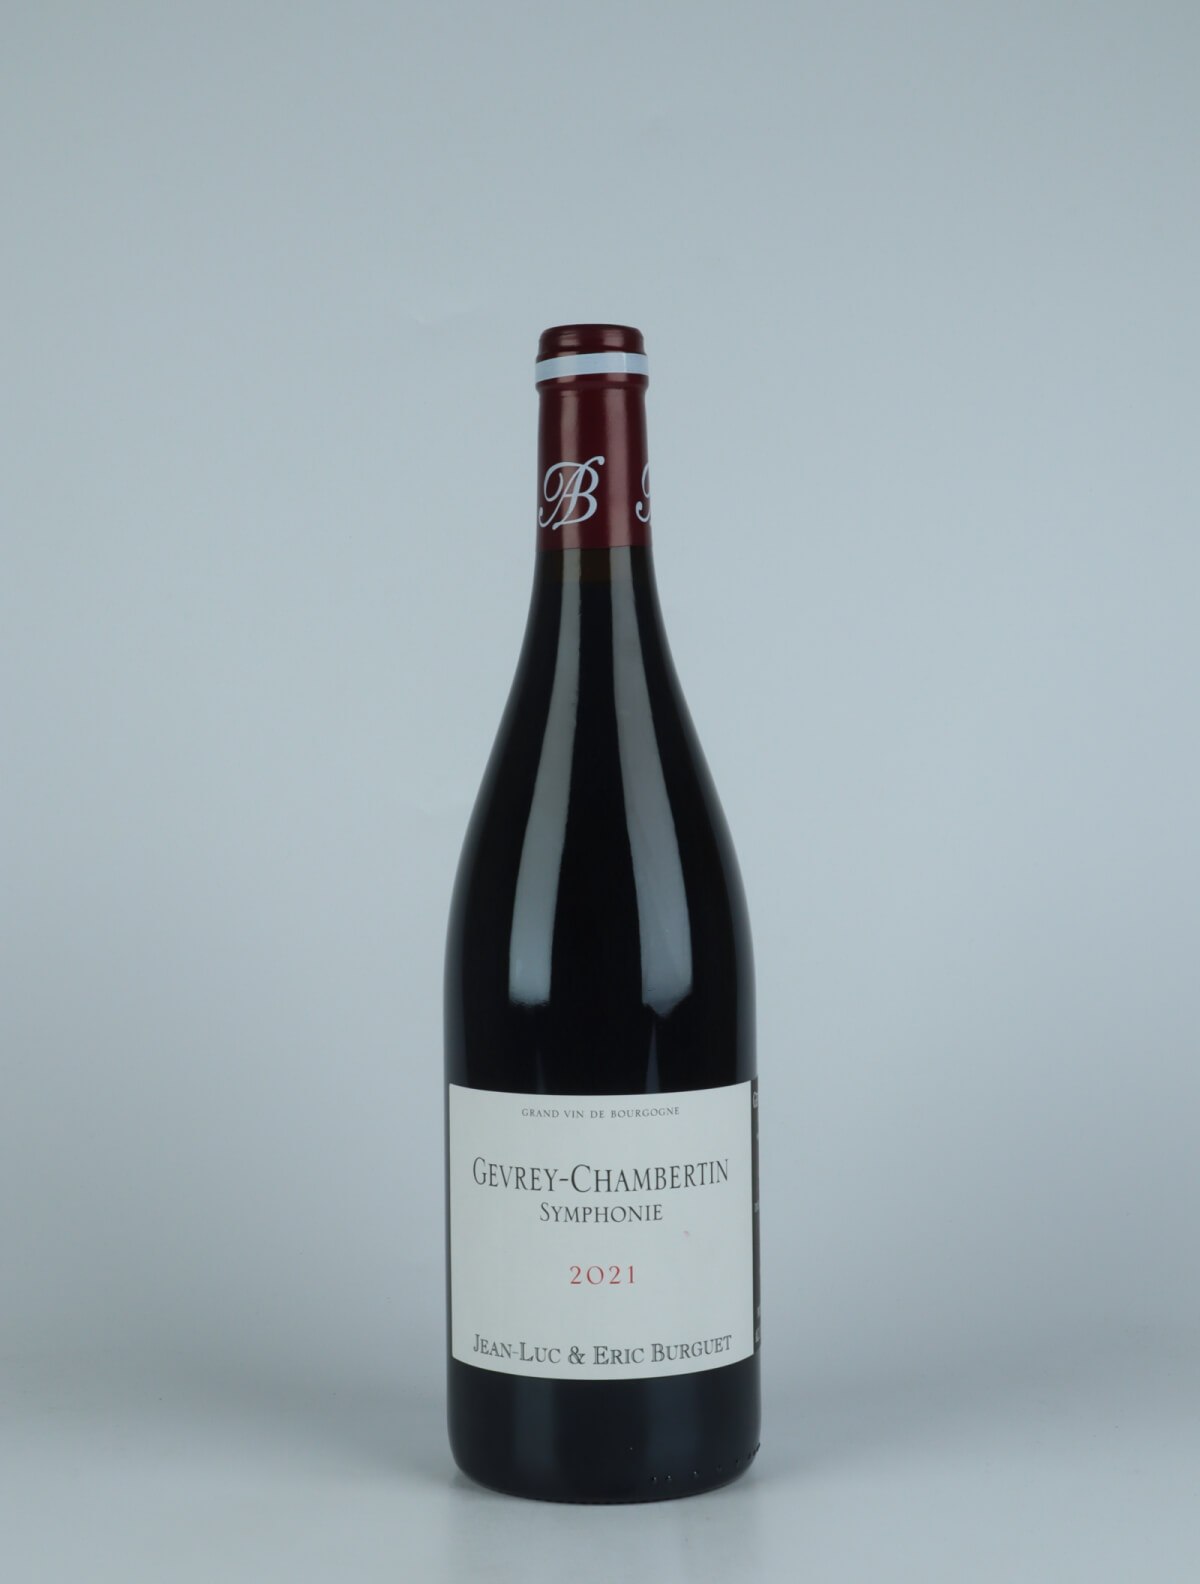 En flaske 2021 Gevrey-Chambertin - Symphonie Rødvin fra Jean-Luc & Eric Burguet, Bourgogne i Frankrig